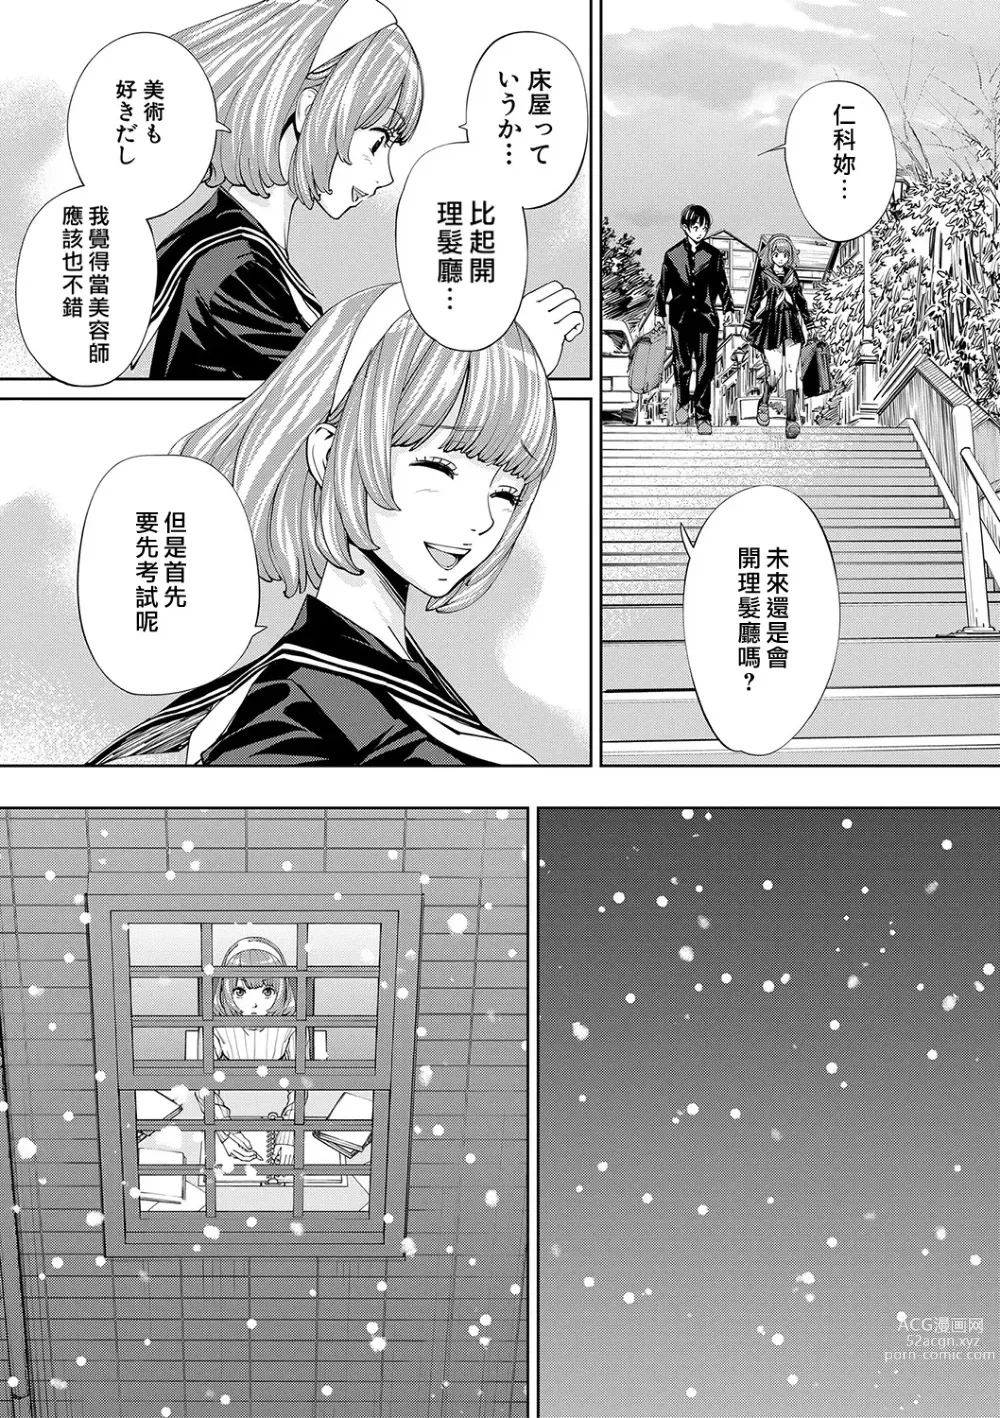 Page 18 of manga Chitose